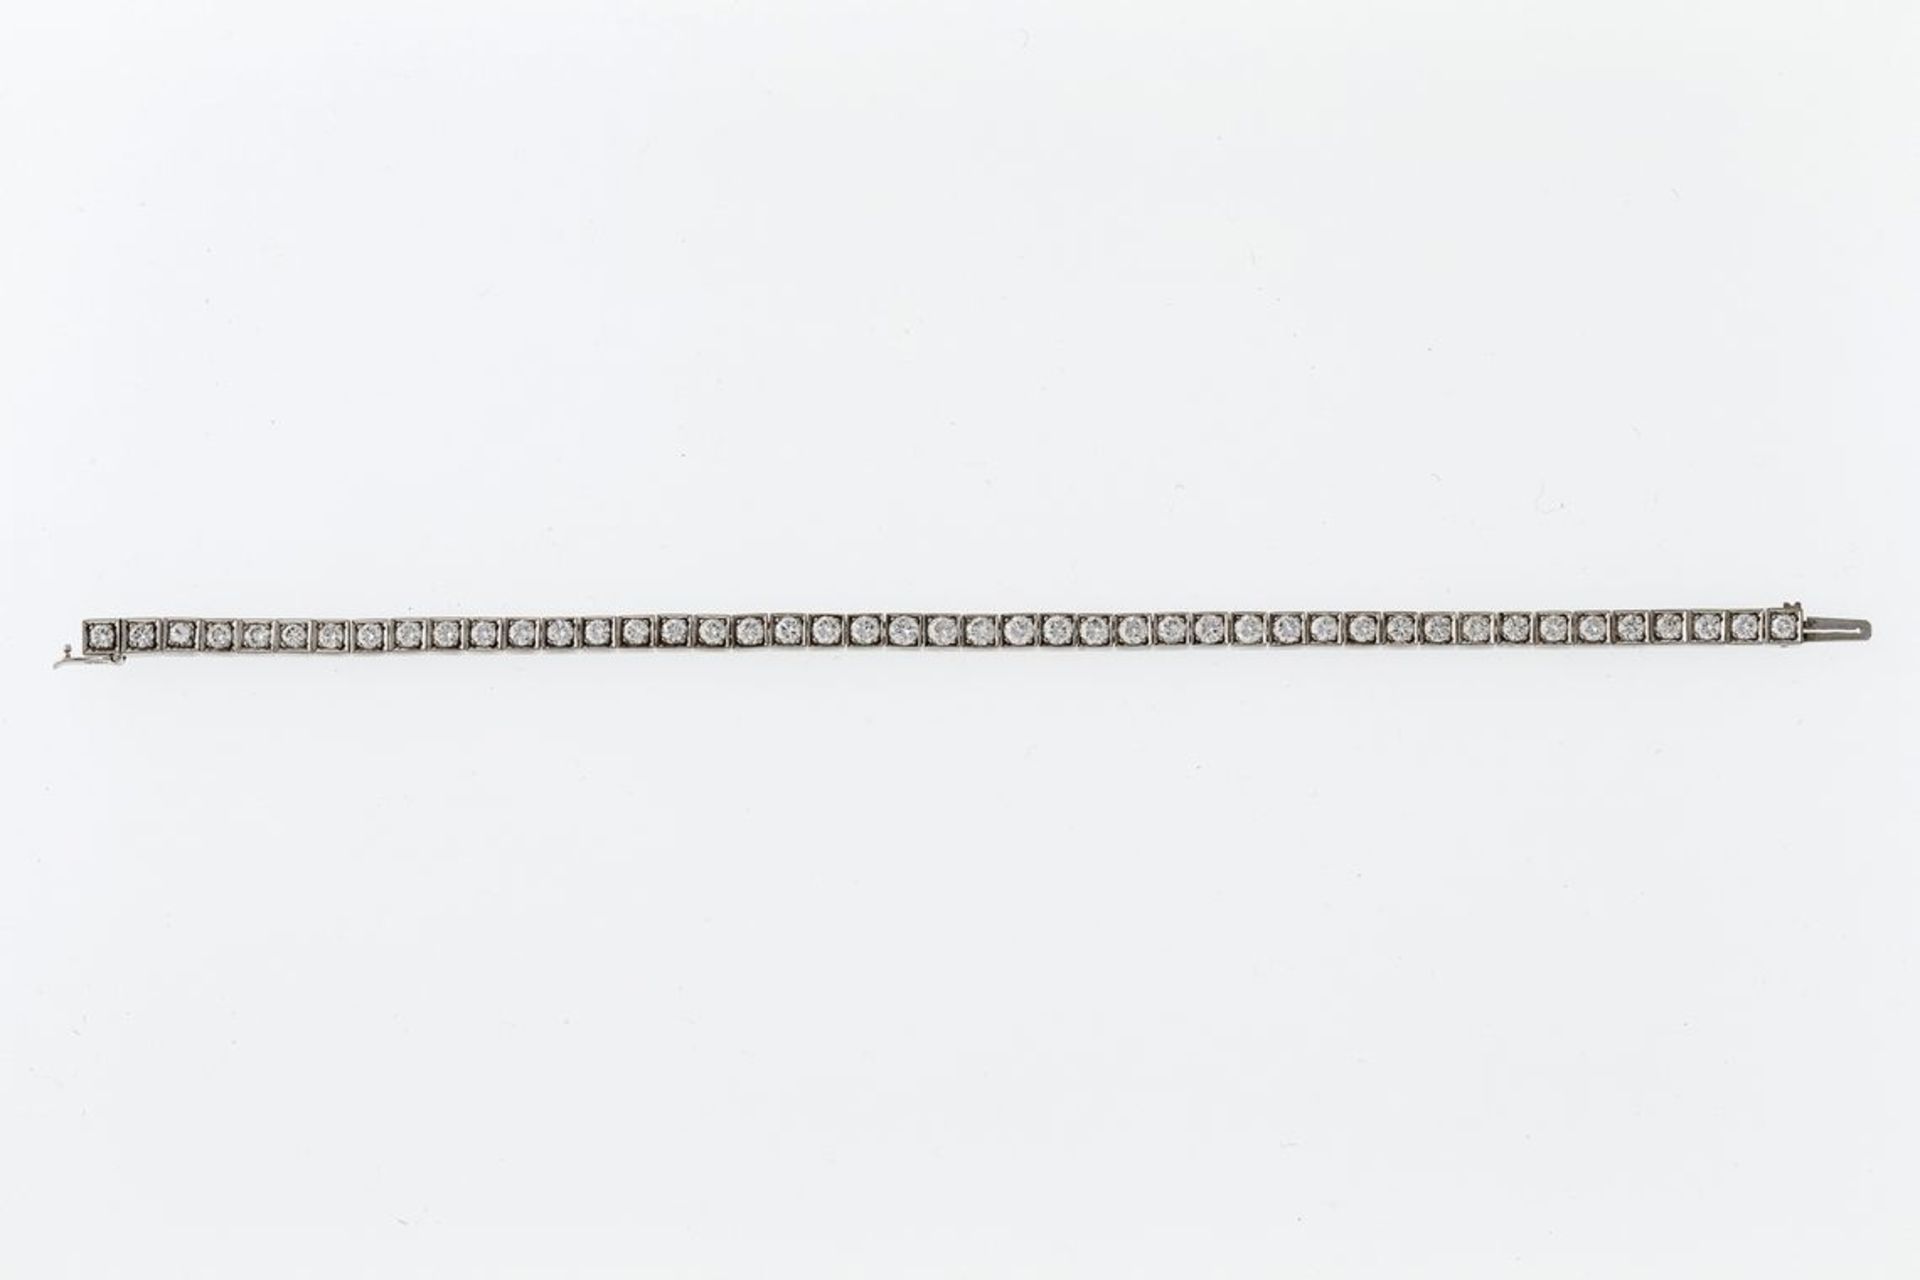 BrillantarmbandWG, 750. Tennisarmband aus quadratischen Gliedern, ausgefasst mit 45 Brillanten von